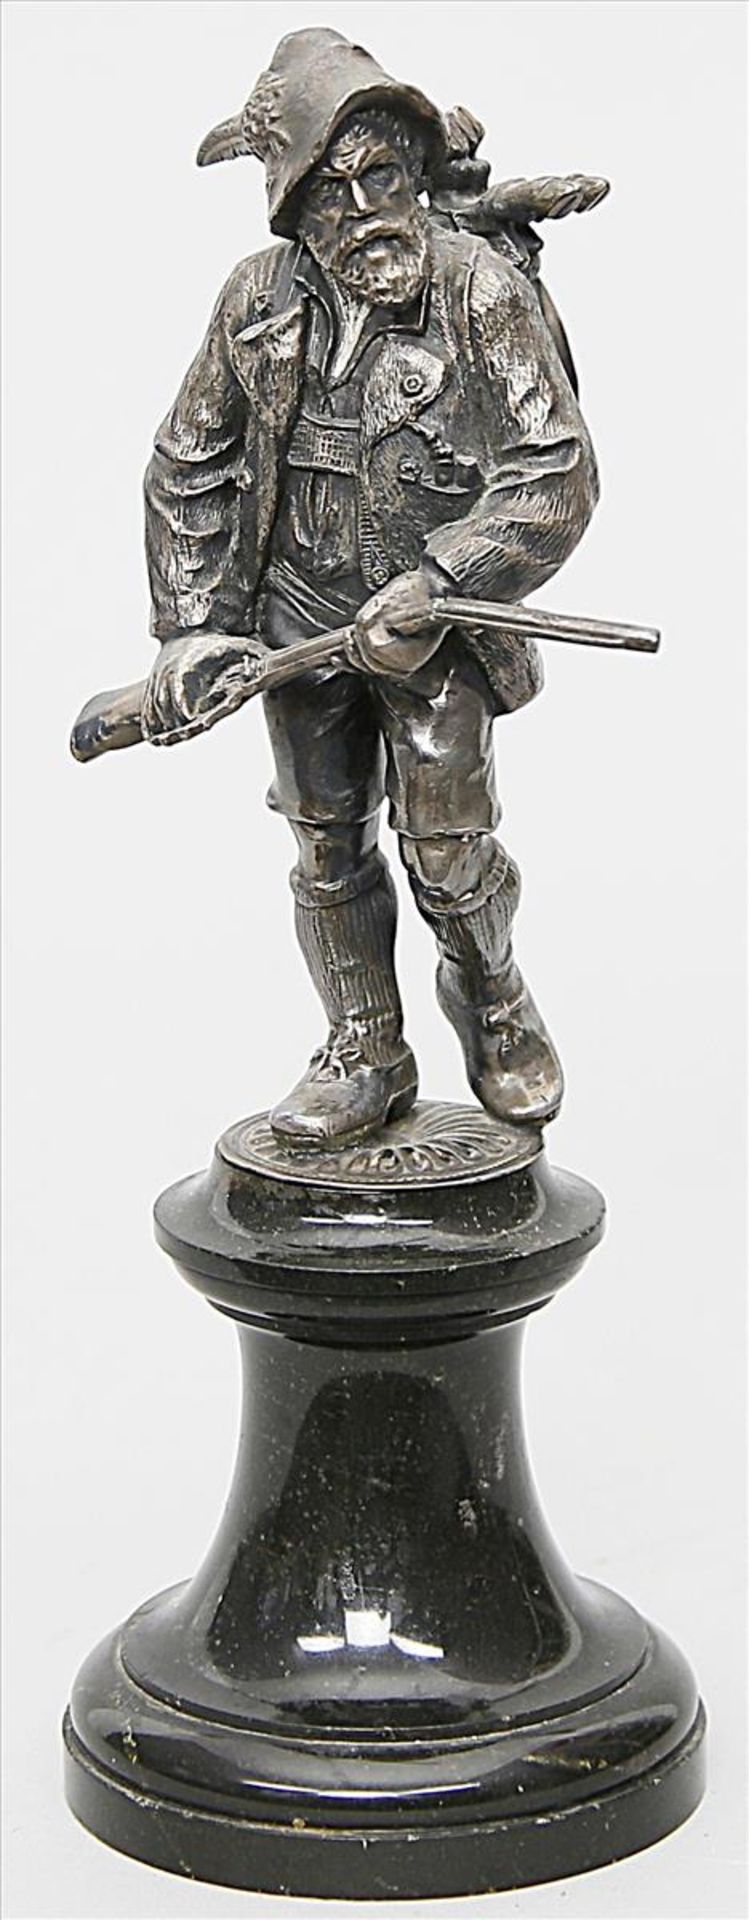 Skulptur eines Jägers mit Gewehr (um 1900).